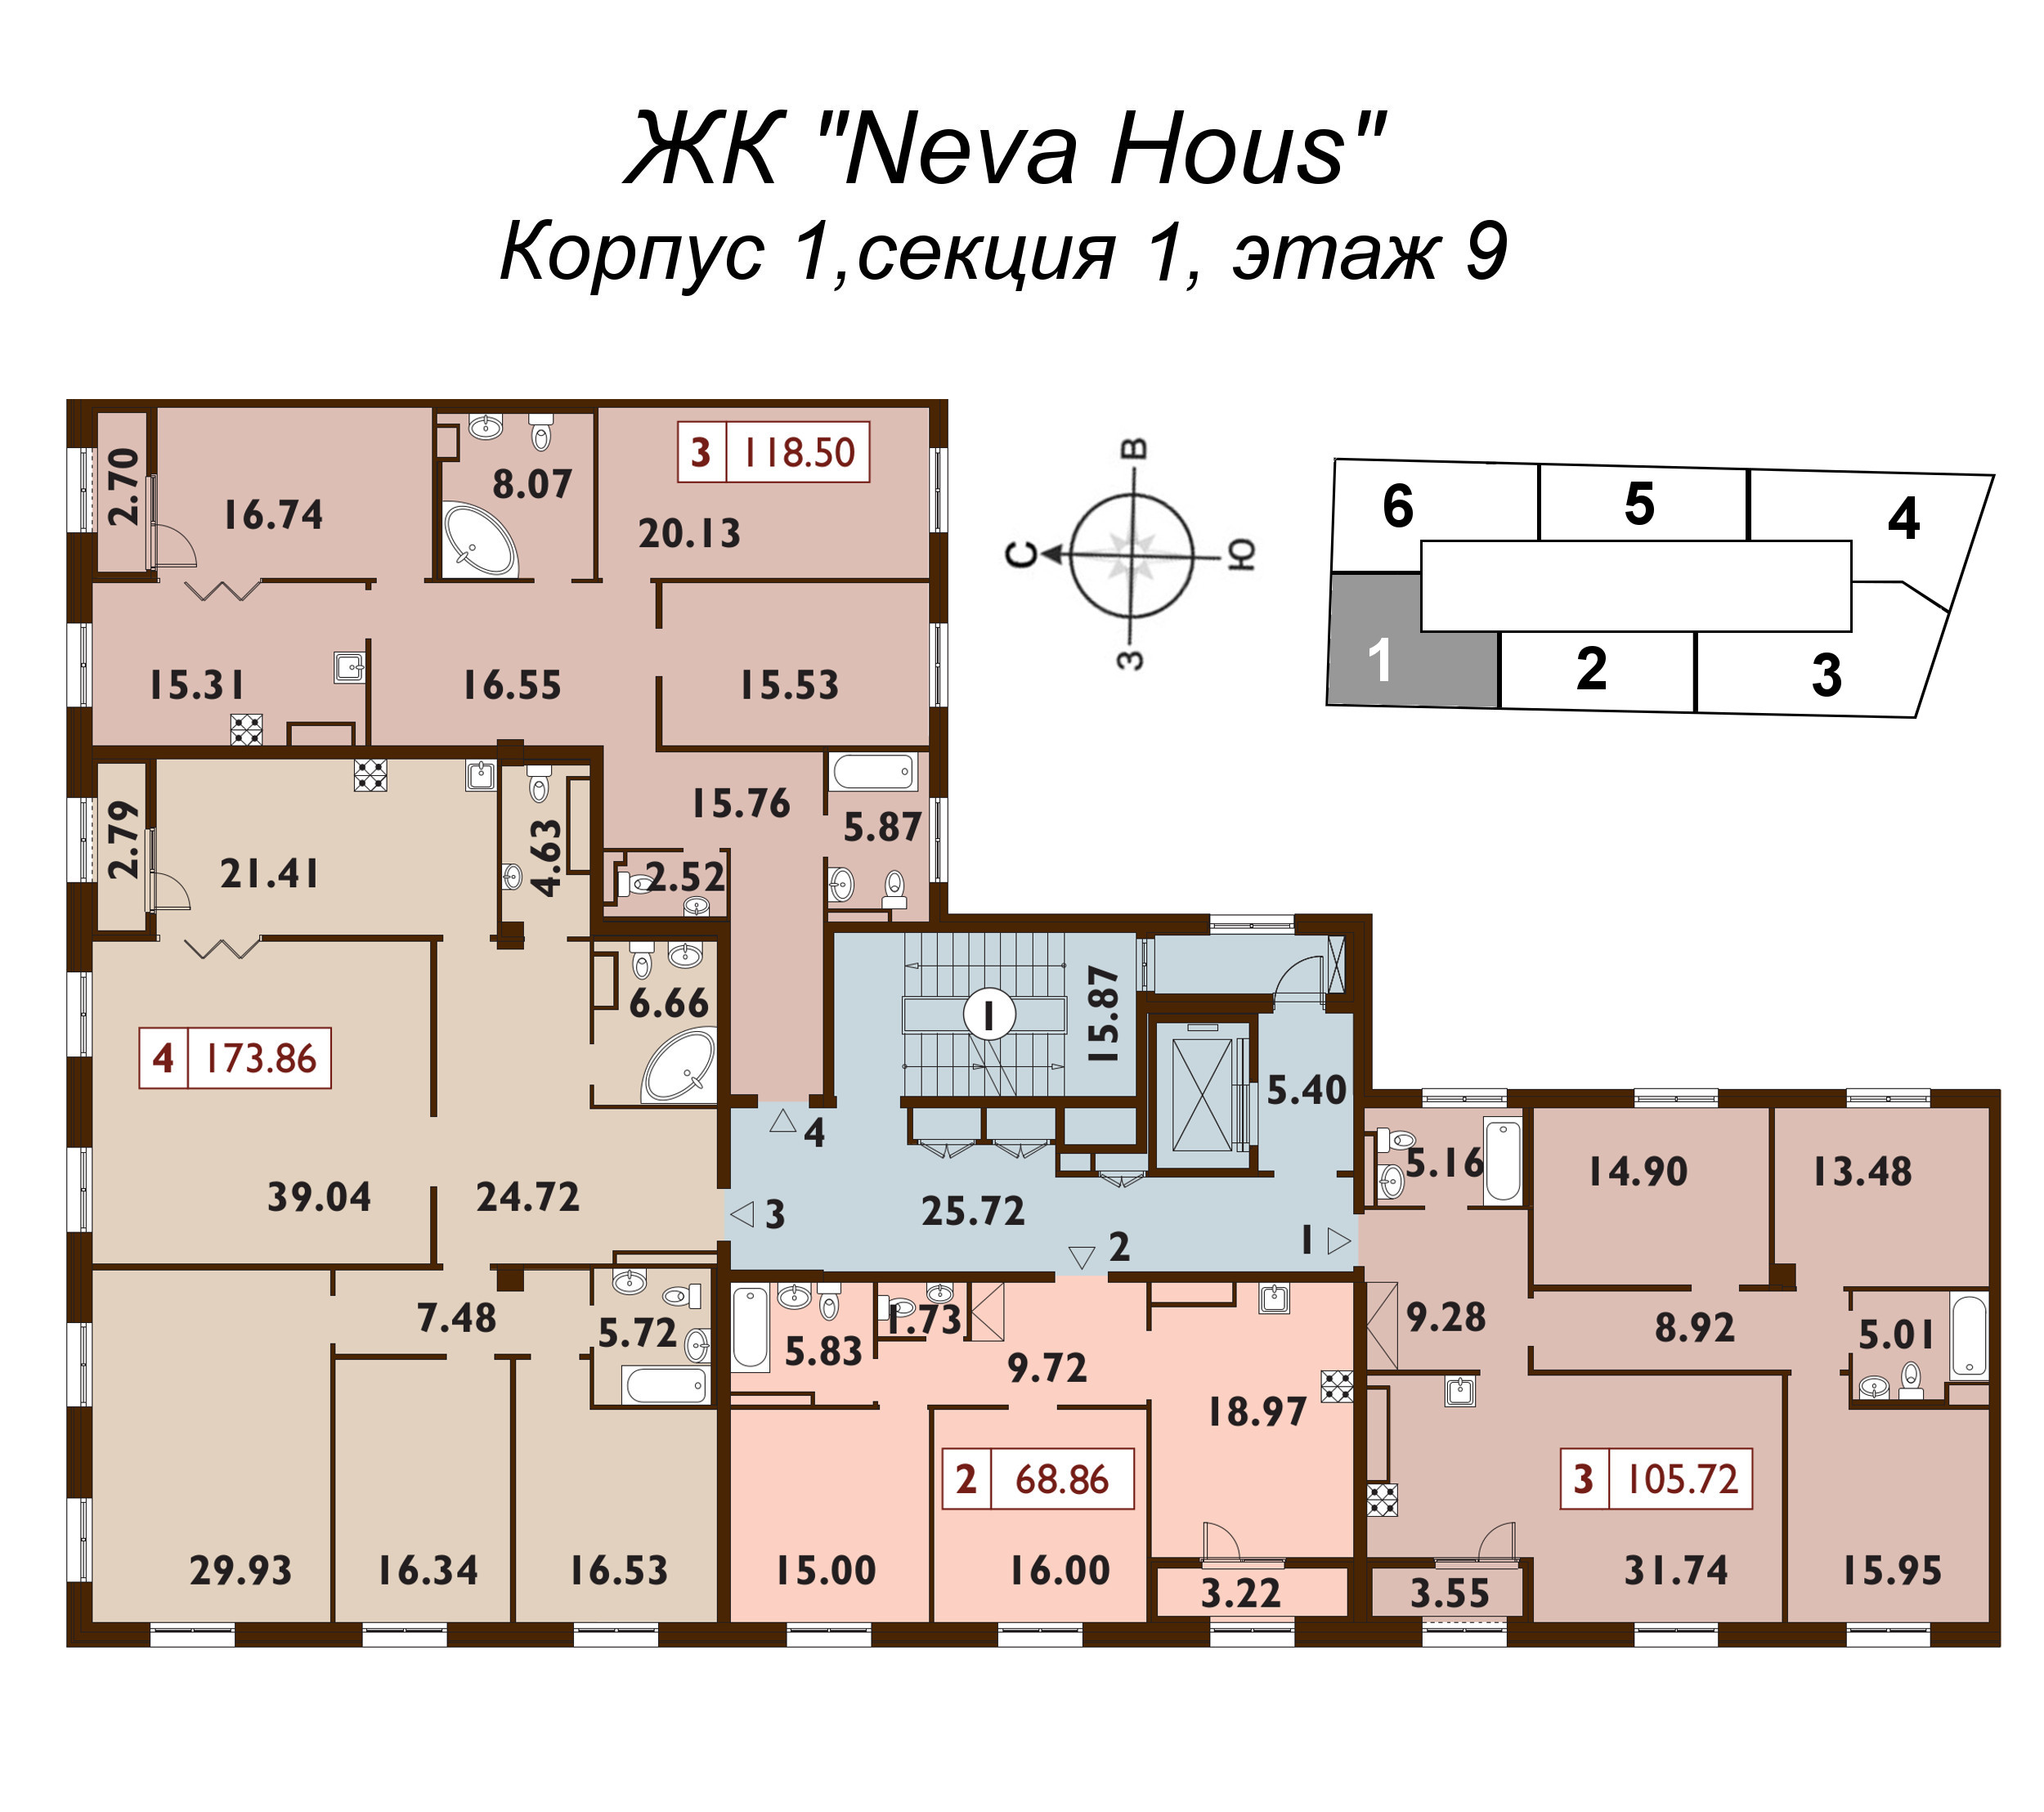 4-комнатная (Евро) квартира, 118.4 м² в ЖК "Neva Haus" - планировка этажа